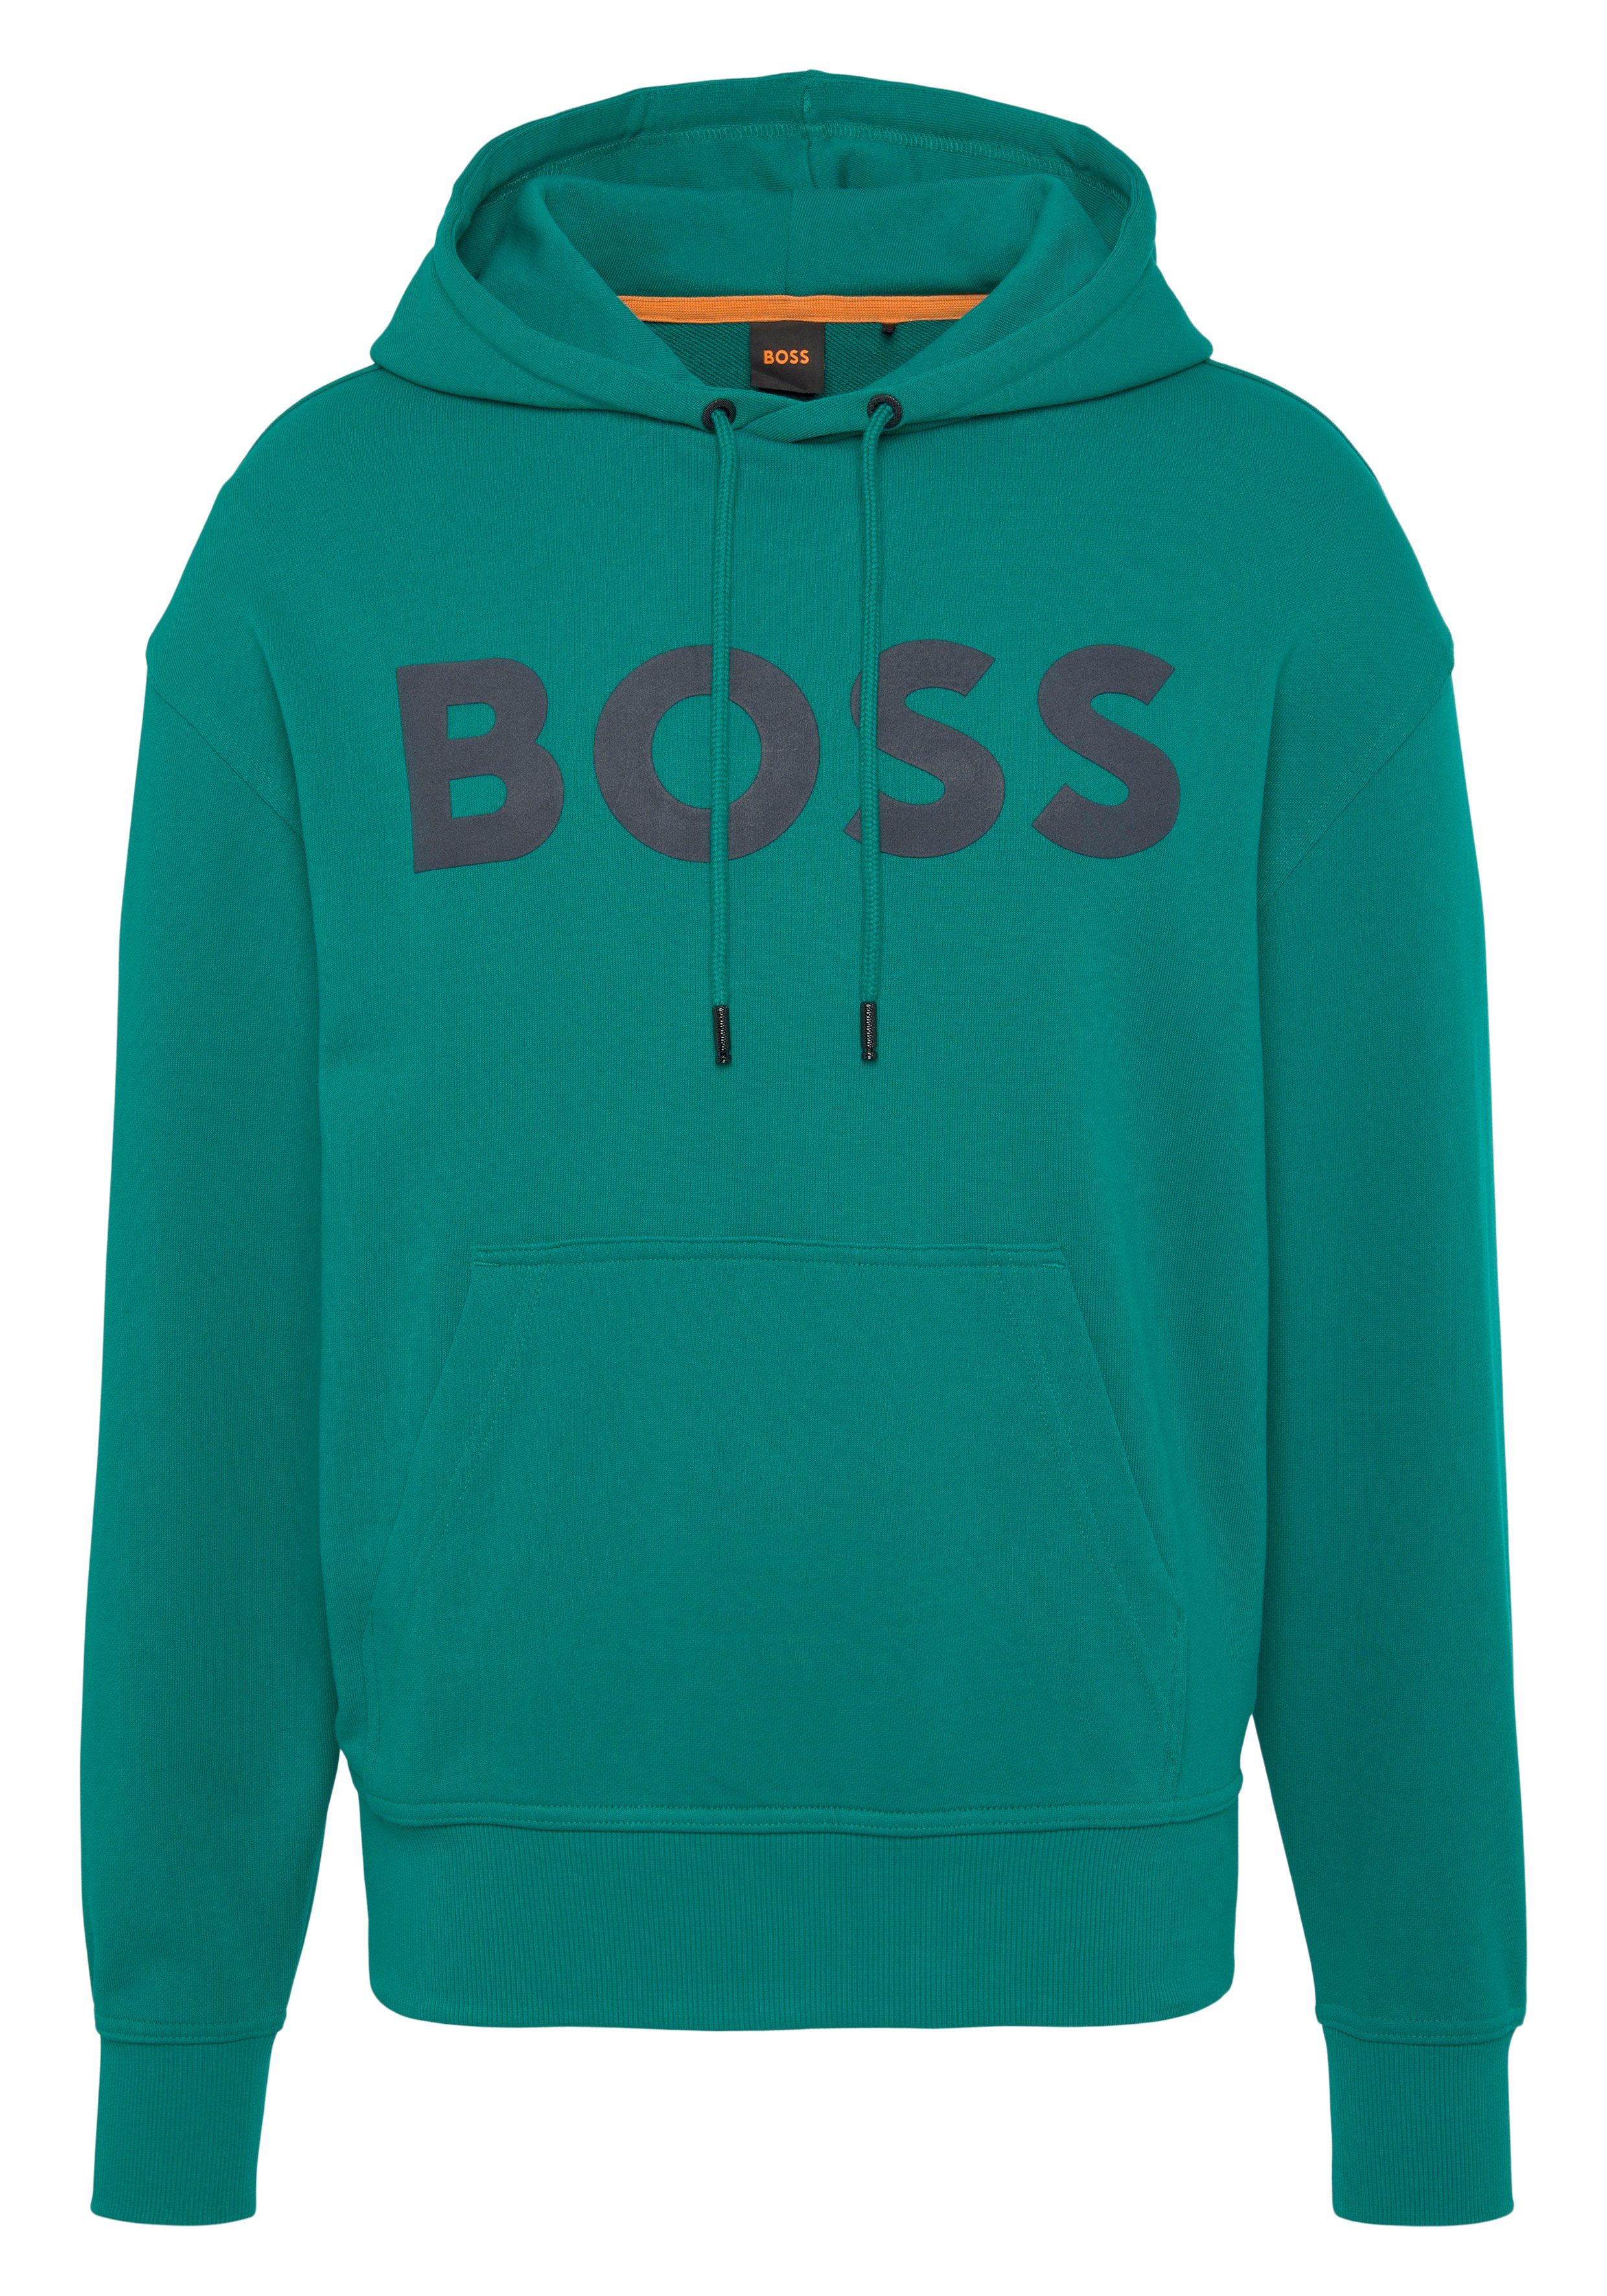 BOSS ORANGE Sweatshirt WebasicHood mit großem BOSS Print auf der Brust Dark Green